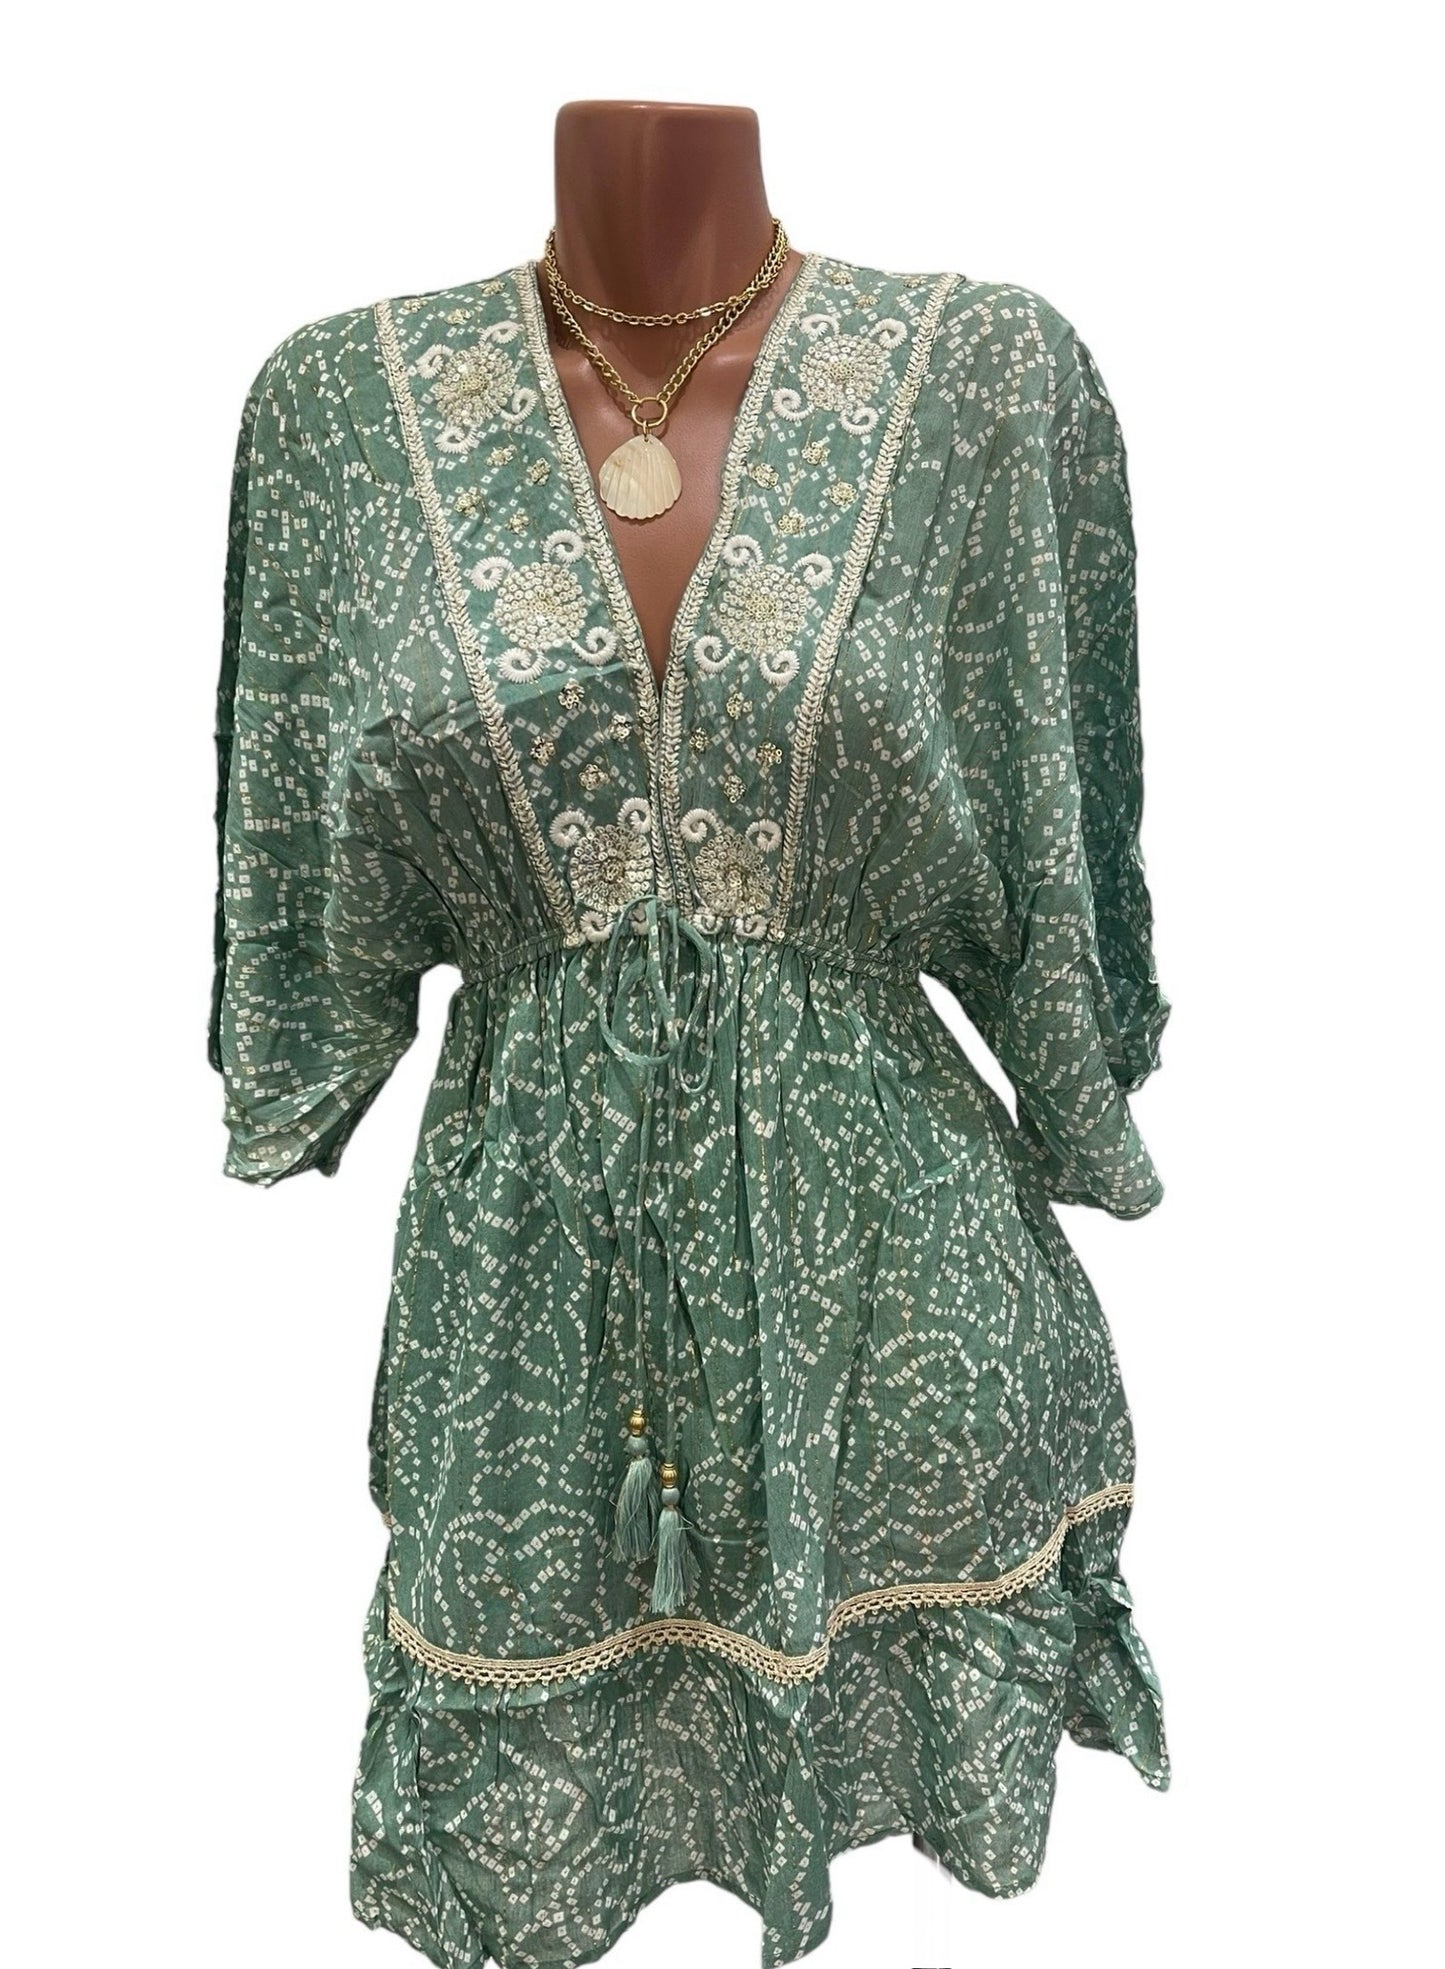 Flor Green Short Dress.